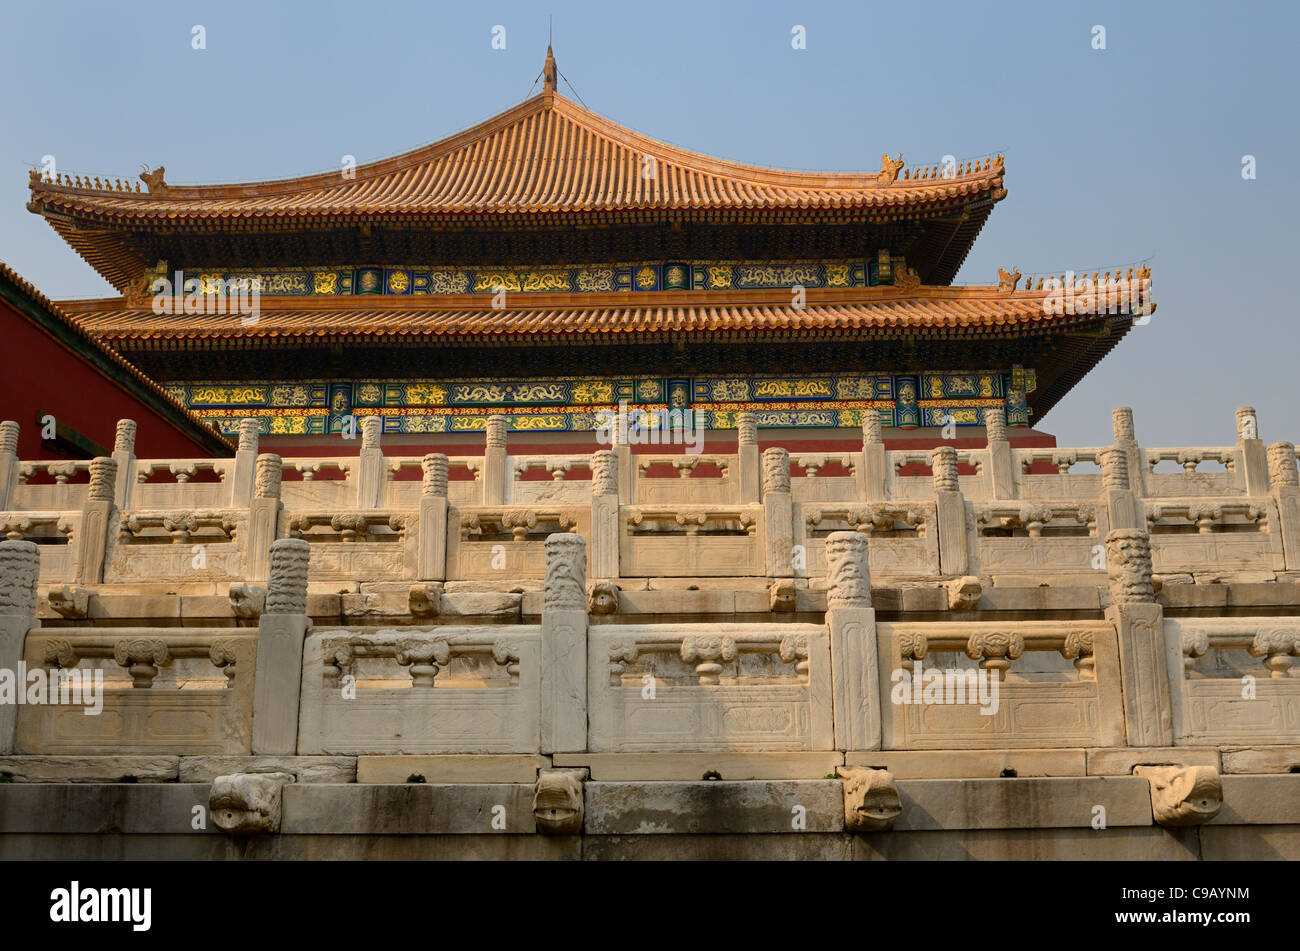 Vue de côté de la salle de l'harmonie suprême dans la Forbidden City Beijing Chine Banque D'Images